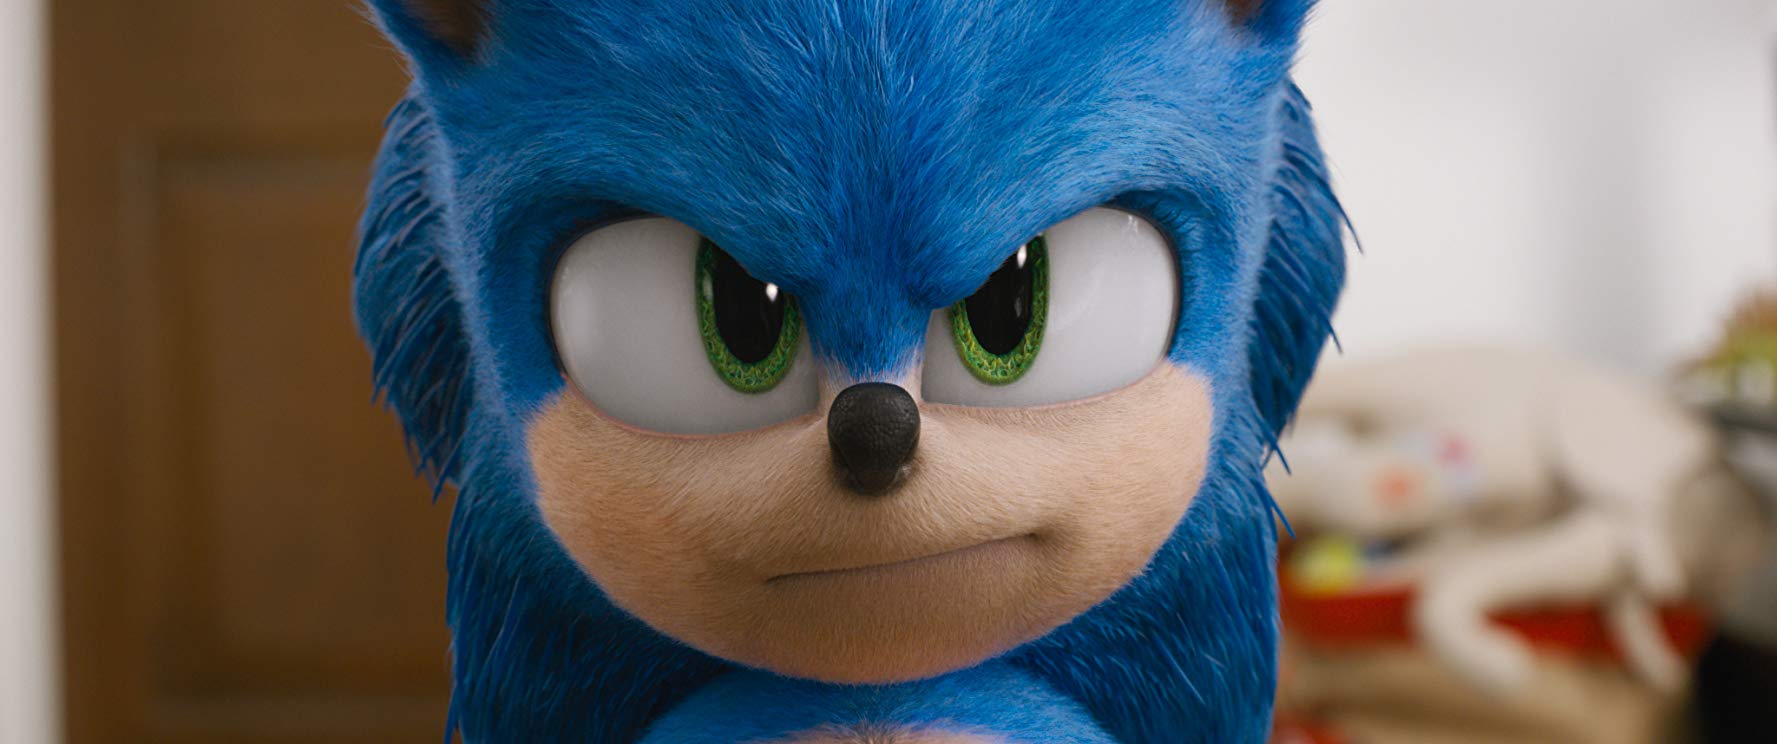 Sonic: O Filme - Bobo, genérico e divertido 5